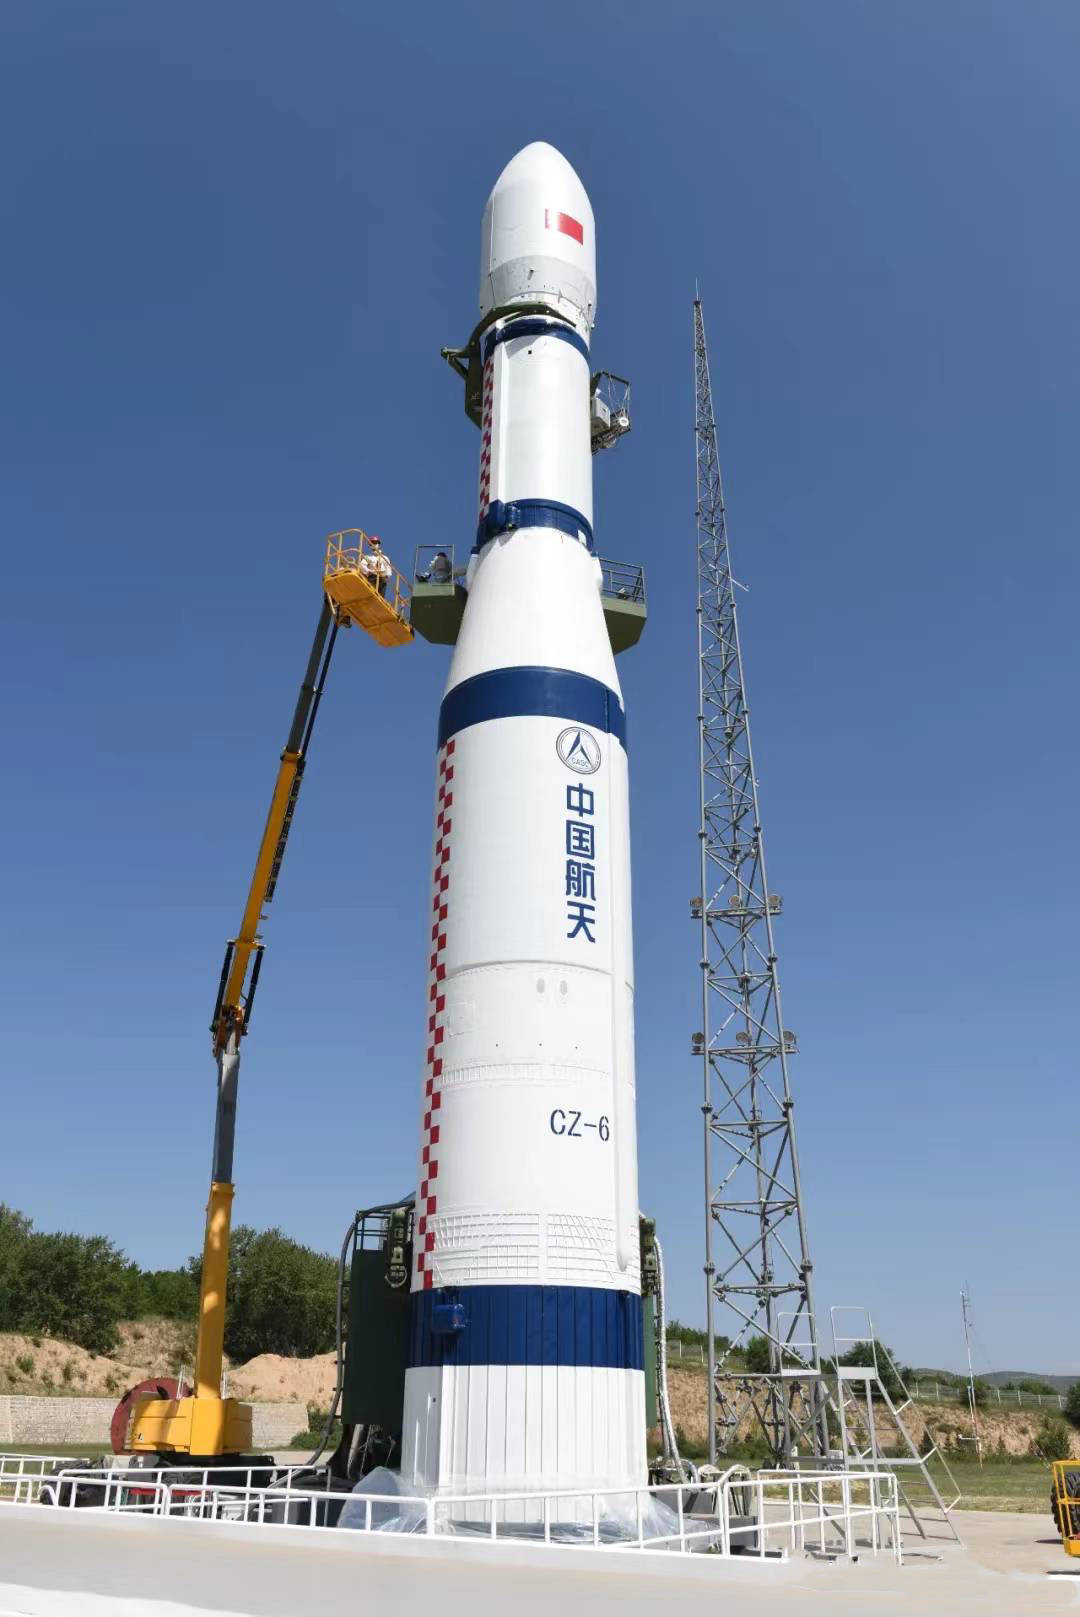 长征六号运载火箭发射,2颗多媒体贝塔试验卫星进入预定轨道